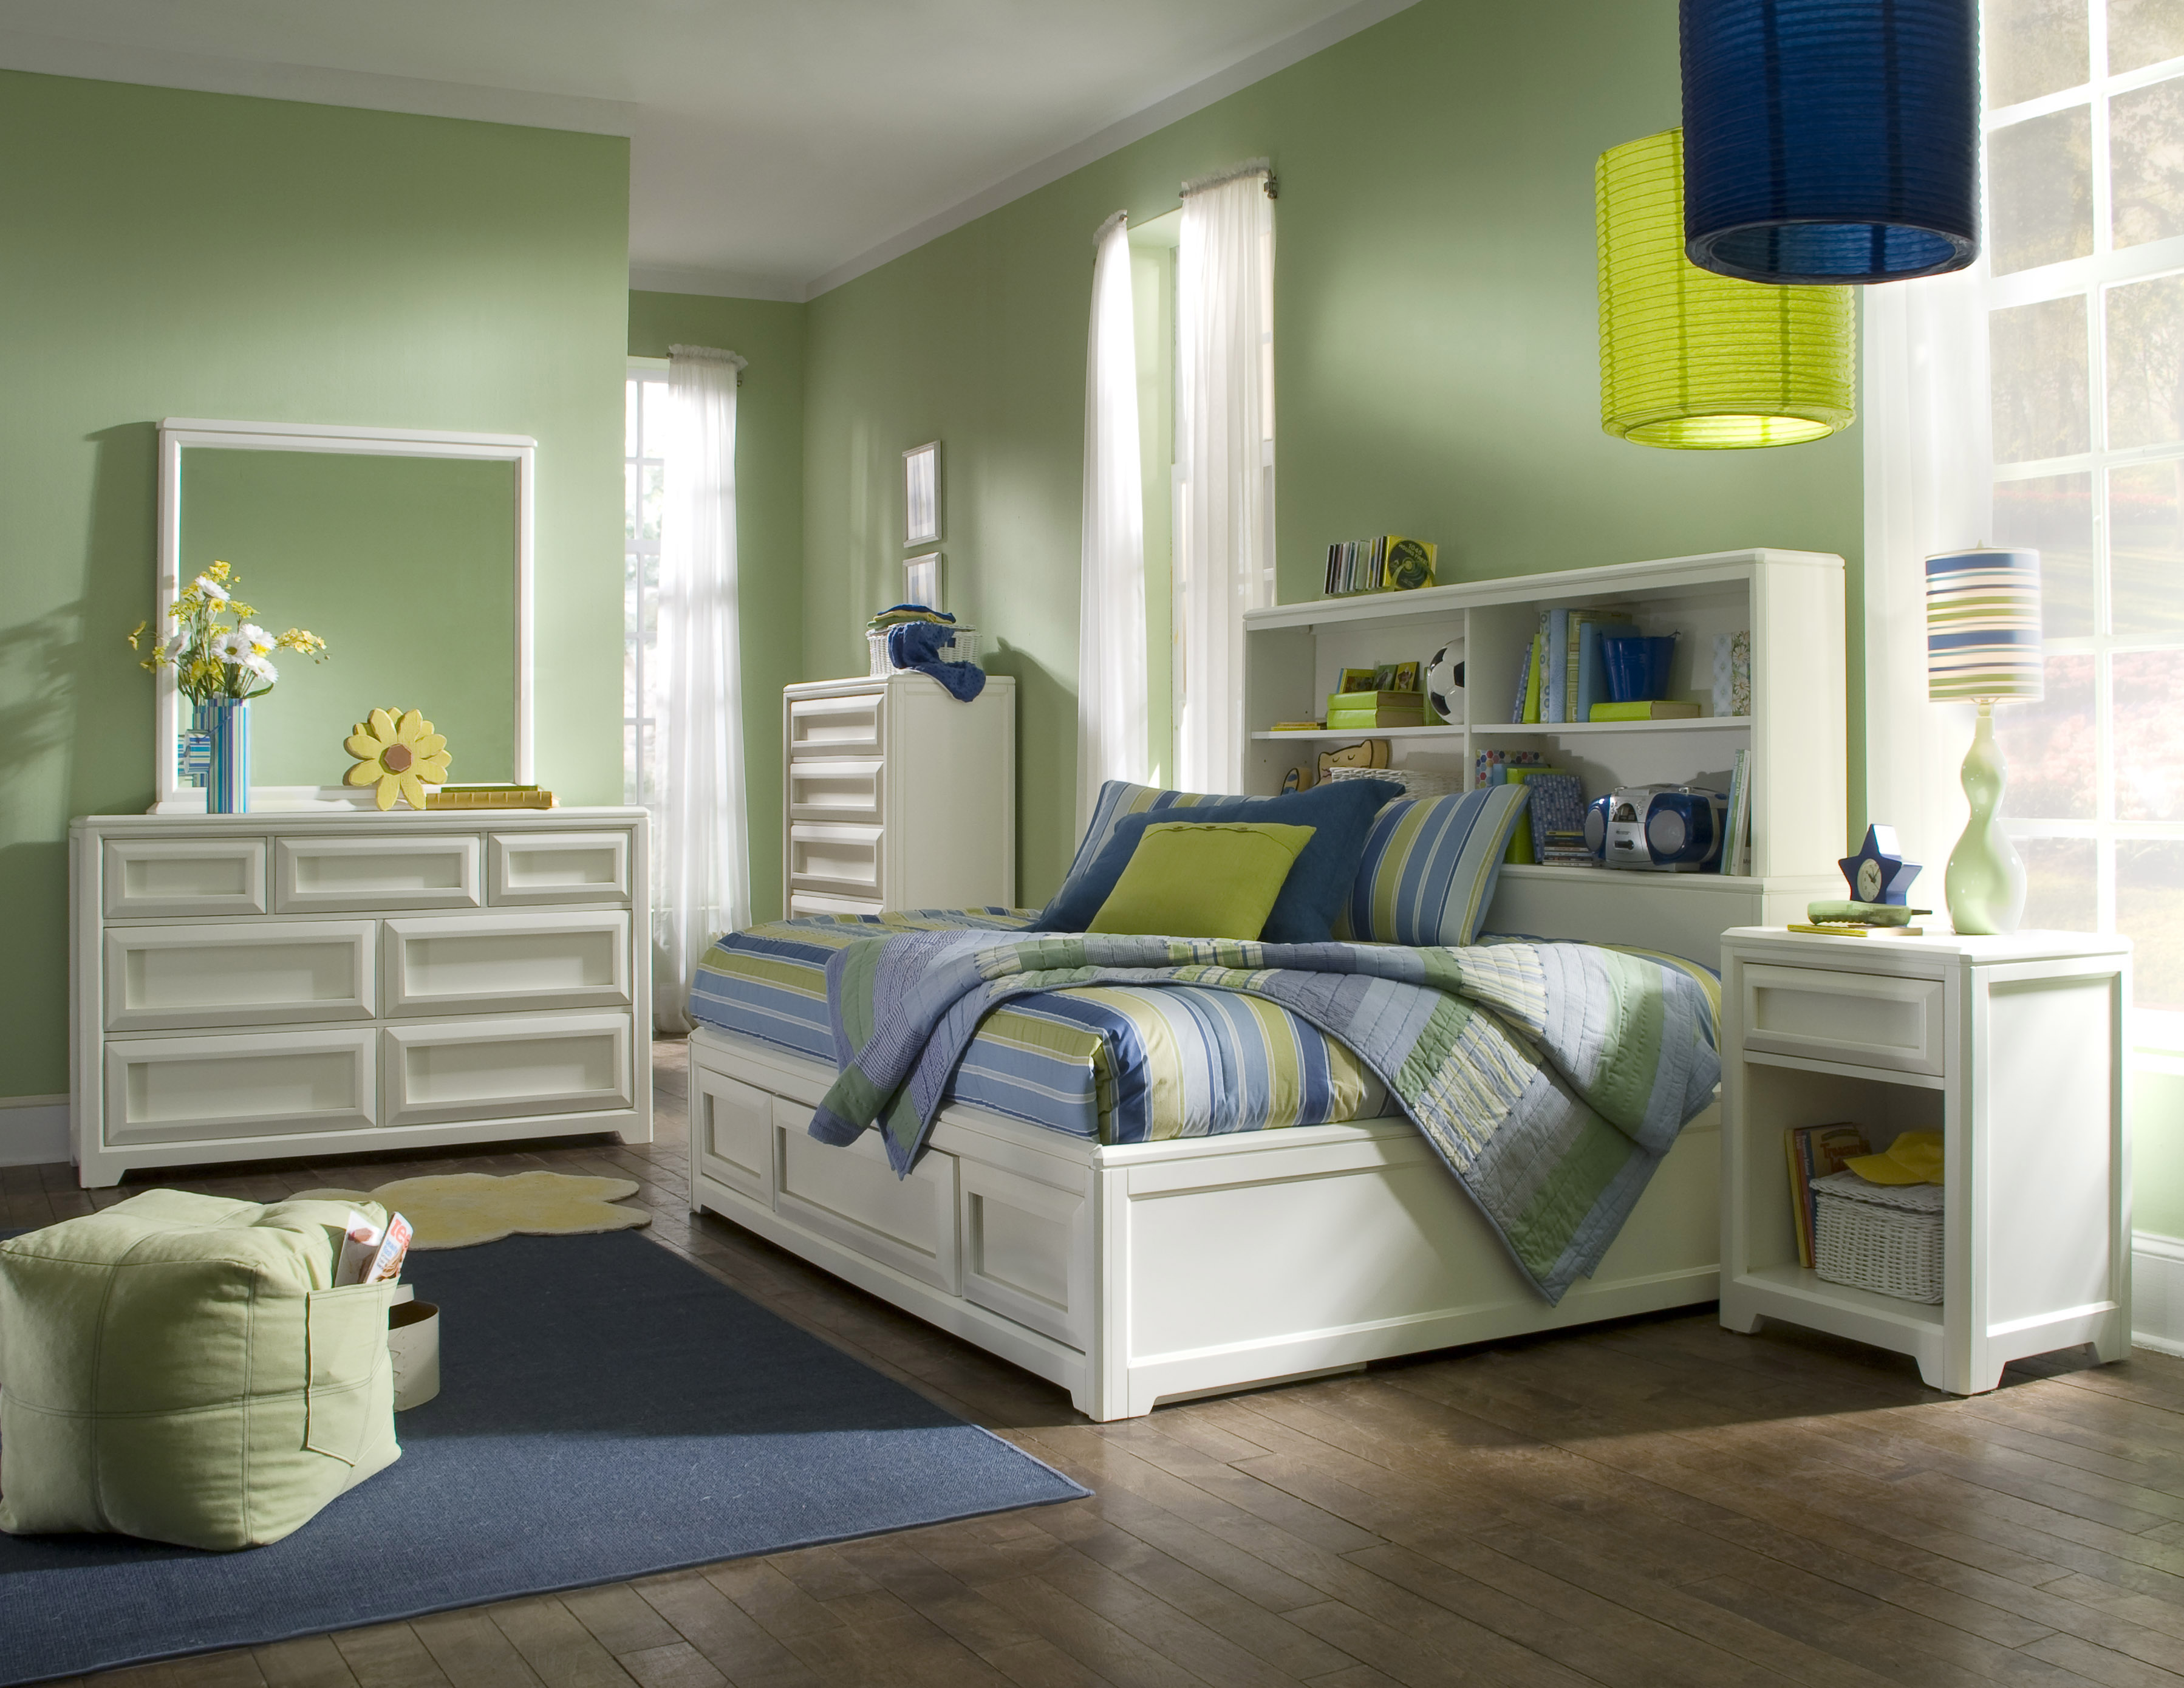 mealey's bedroom furniture set